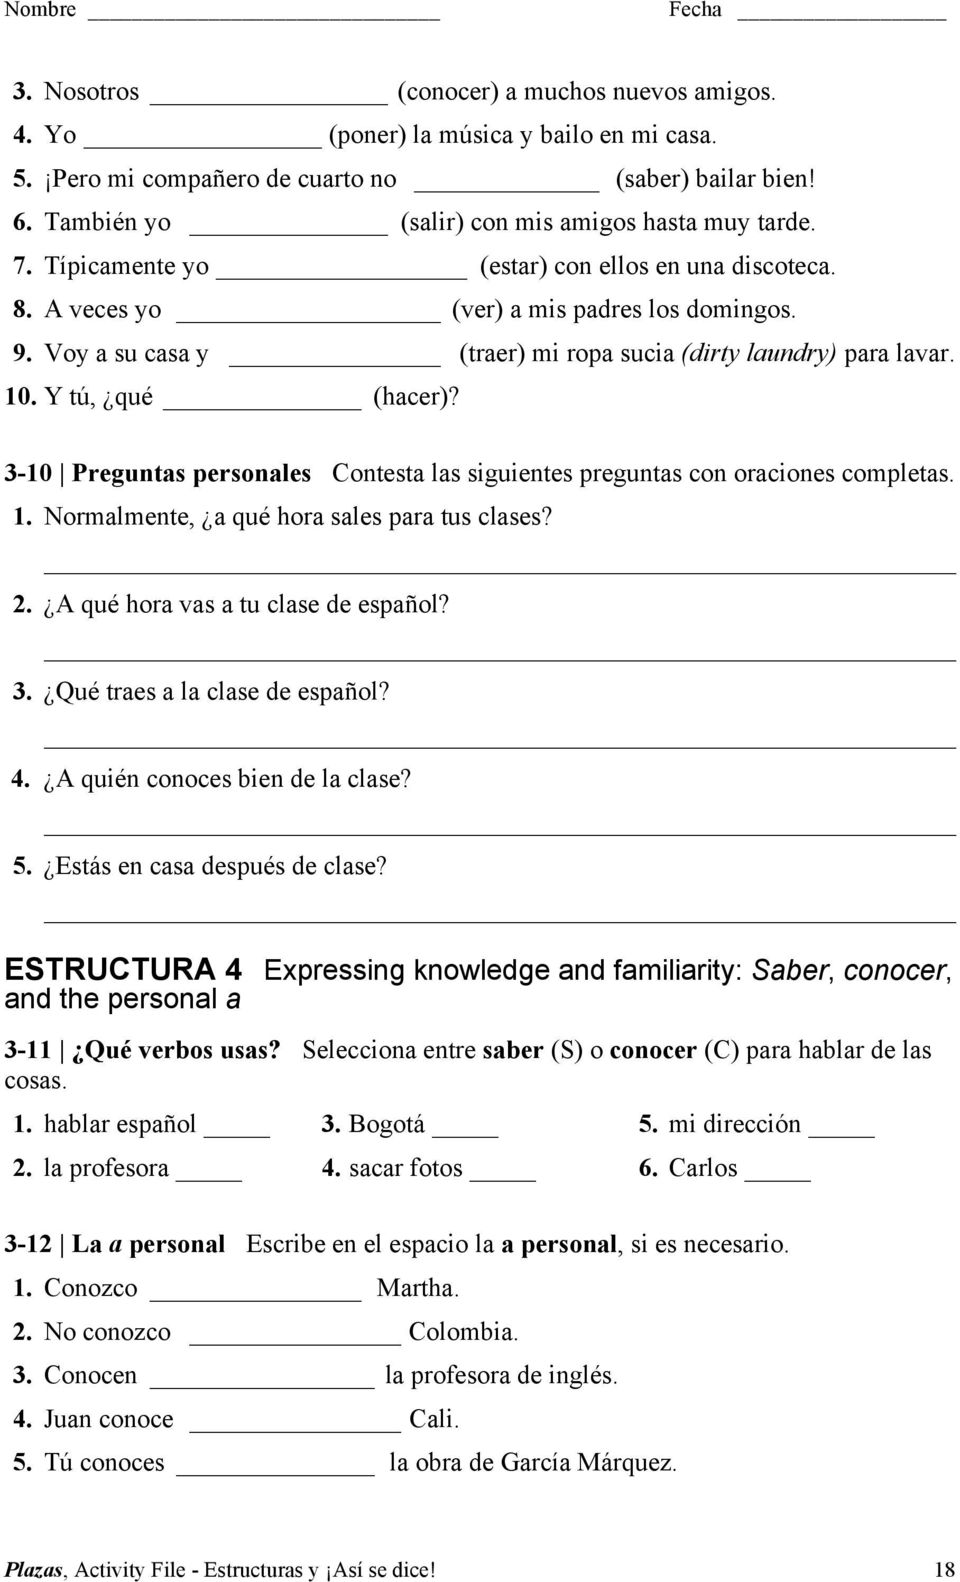 3-10 Preguntas personales Contesta las siguientes preguntas con oraciones completas. 1. Normalmente, a qué hora sales para tus clases? 2. A qué hora vas a tu clase de español? 3.